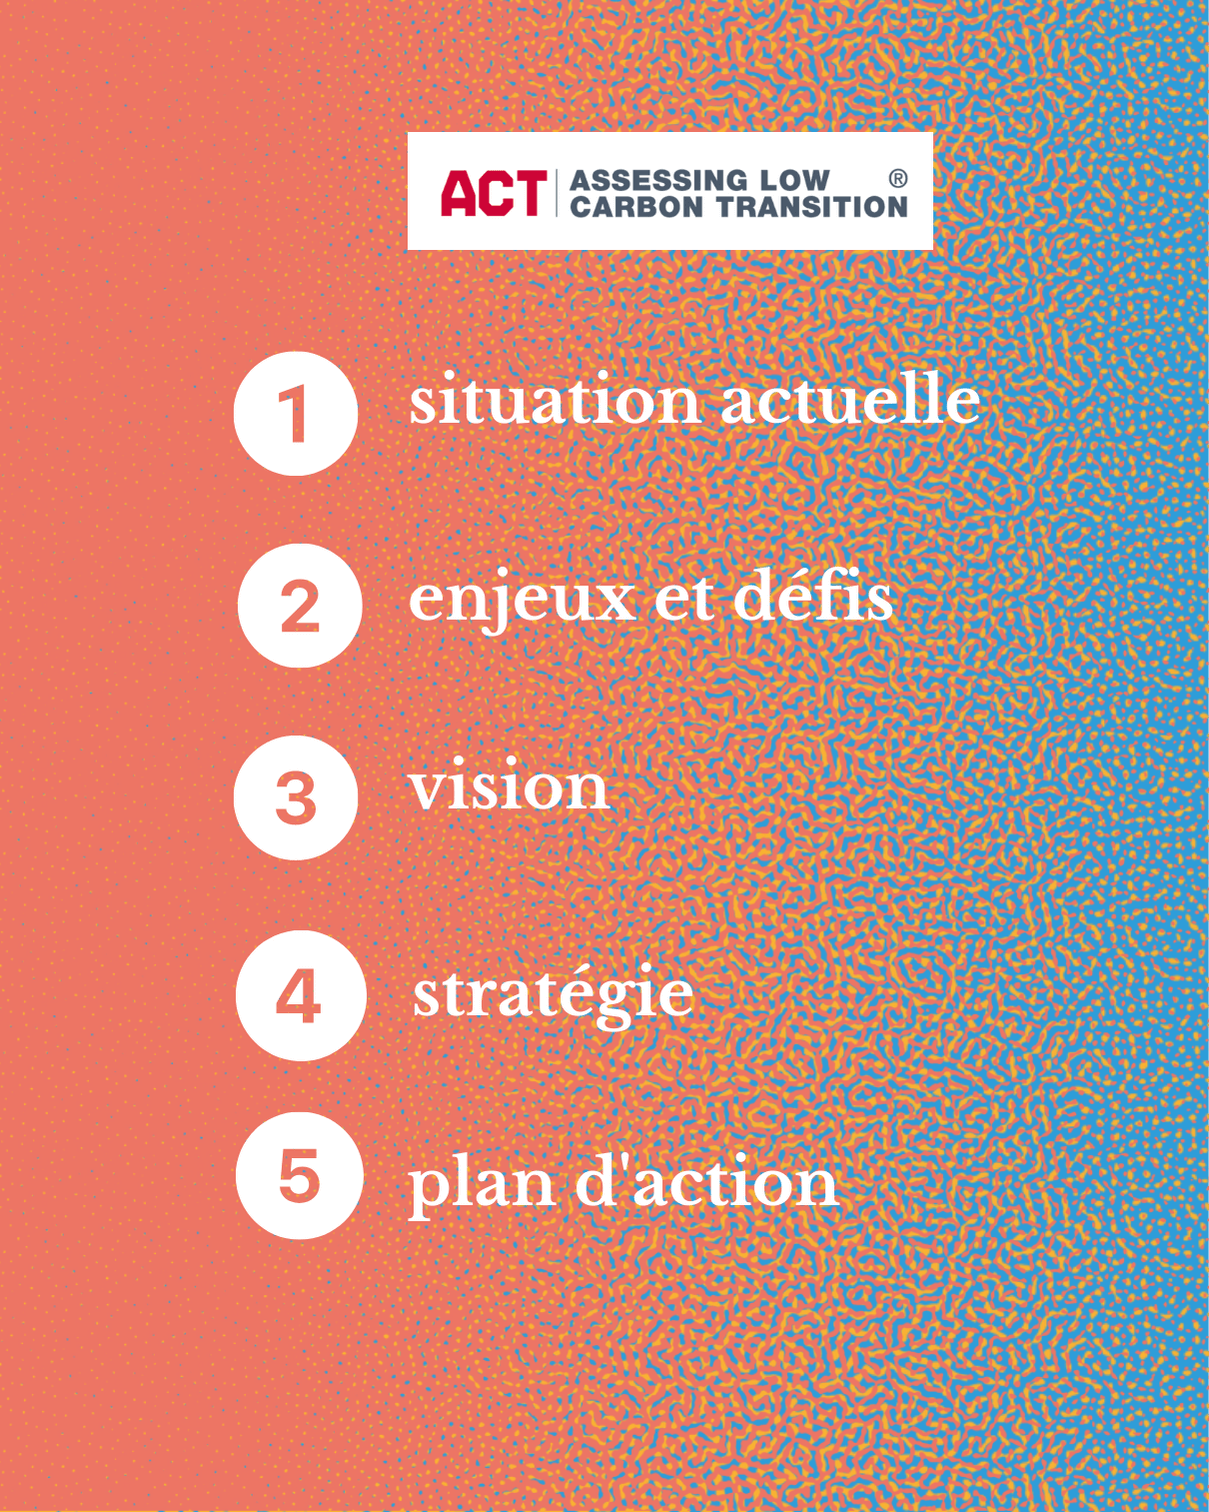 ACT les étapes 1 situation actuelle 2 enjeux et défis 3 vision 4 stratégie 5 plan d'action